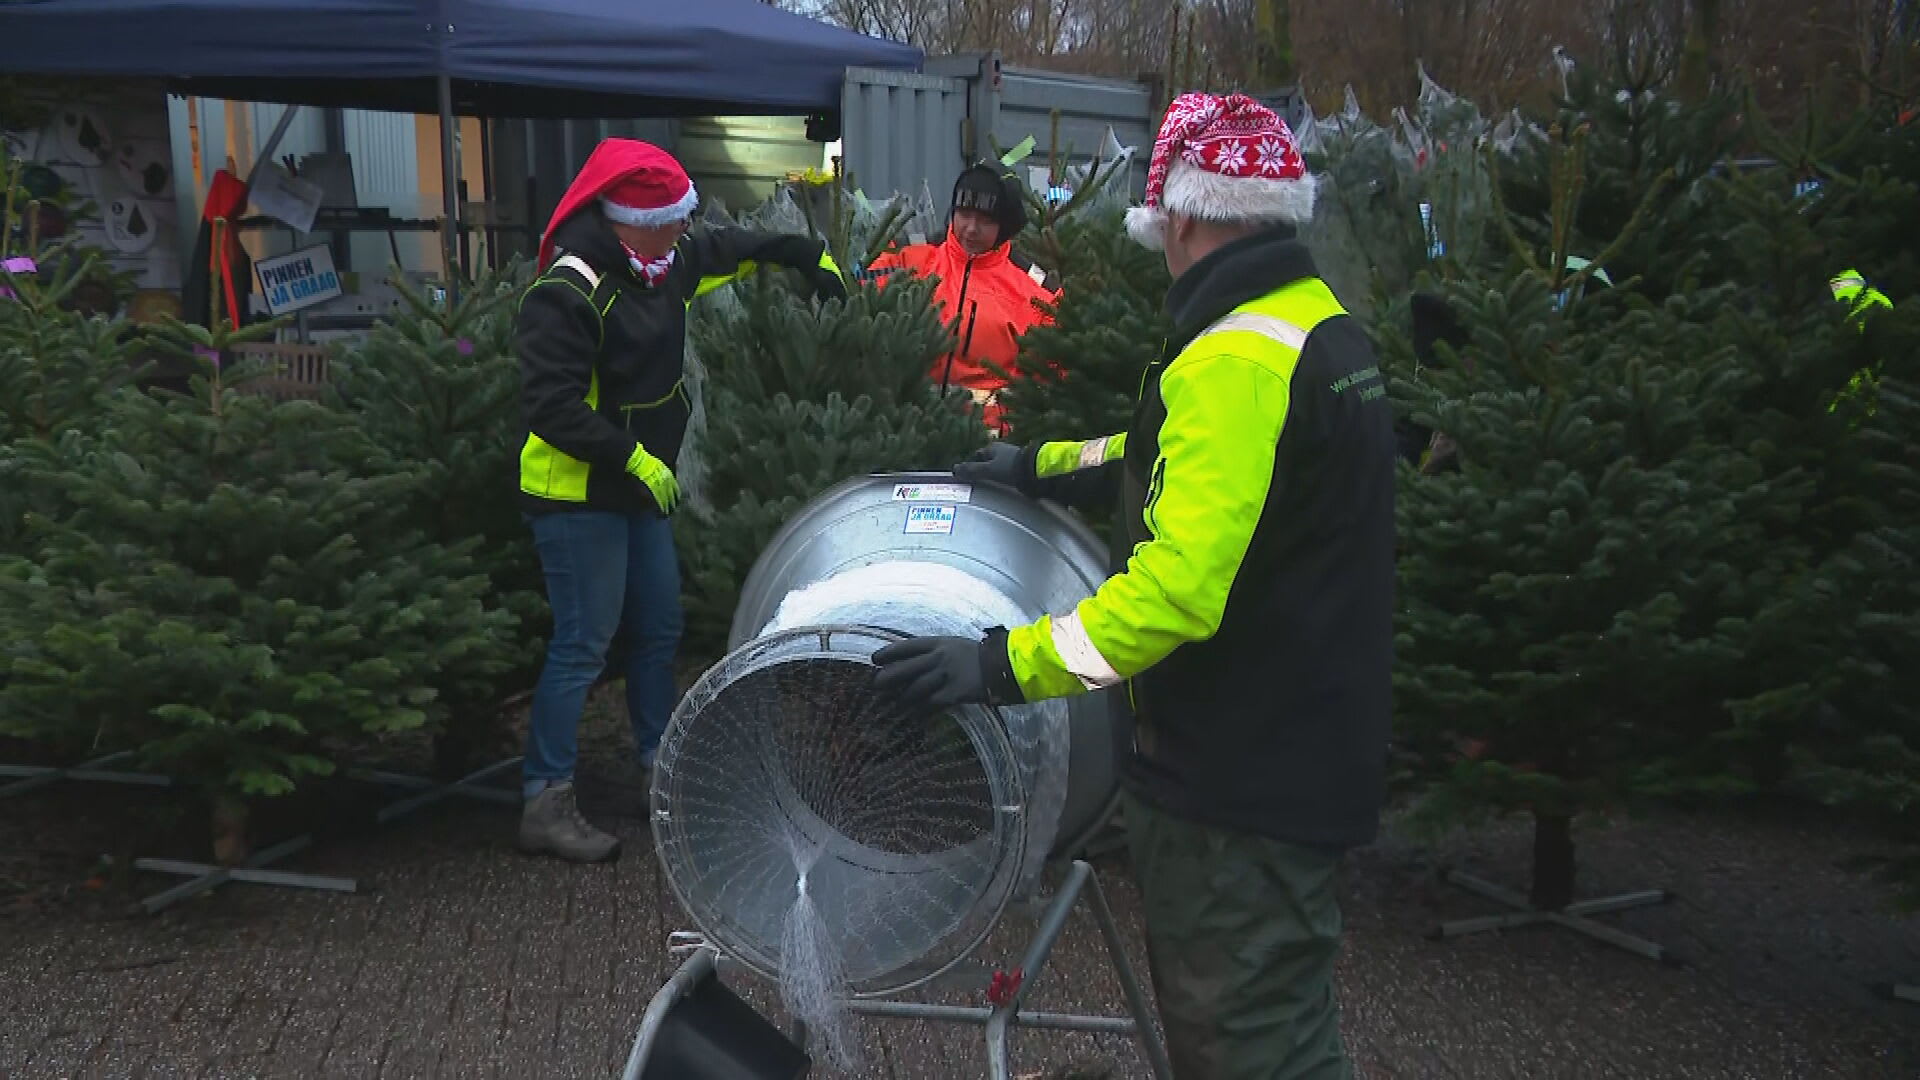 Kerstboomverkopers klaar voor de piek: 'Hoop er 100 tot 150 te verkopen'